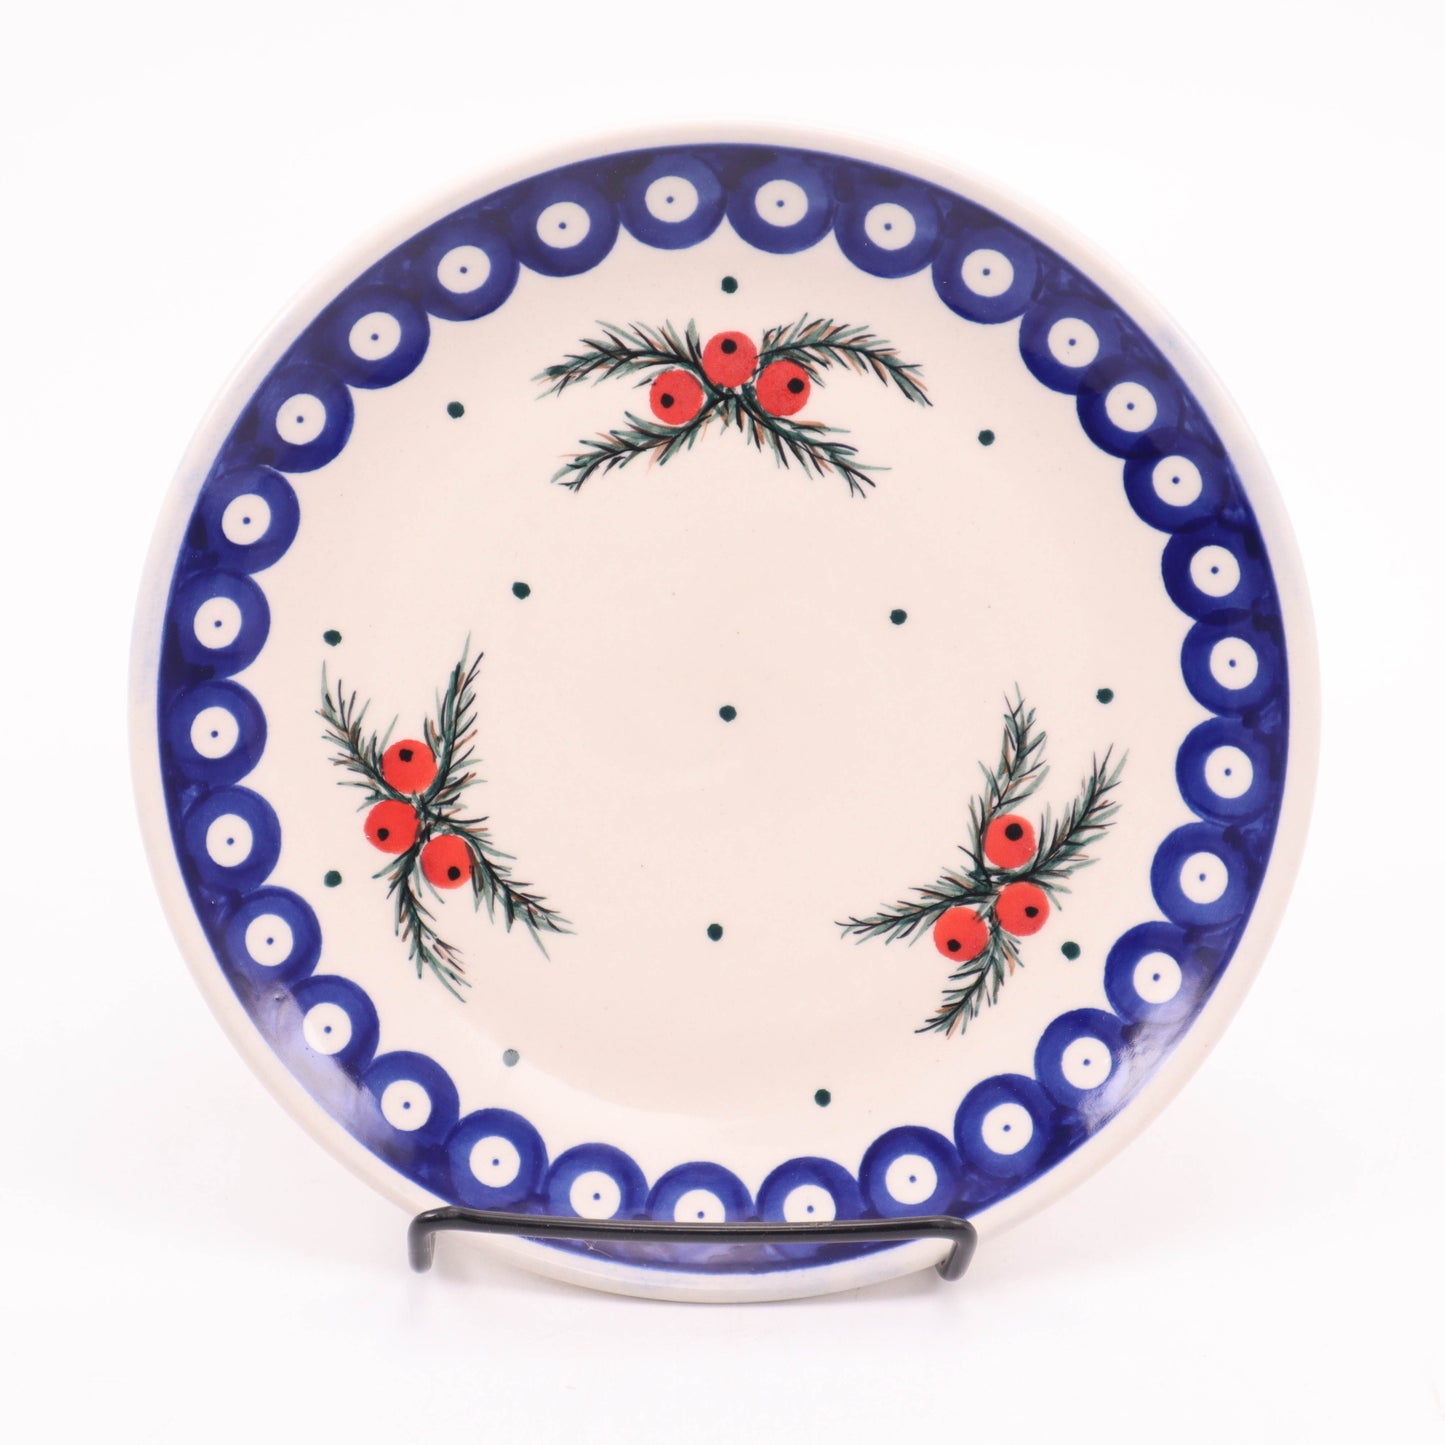 7.5" Desert Plate. Pattern: Mistletoe